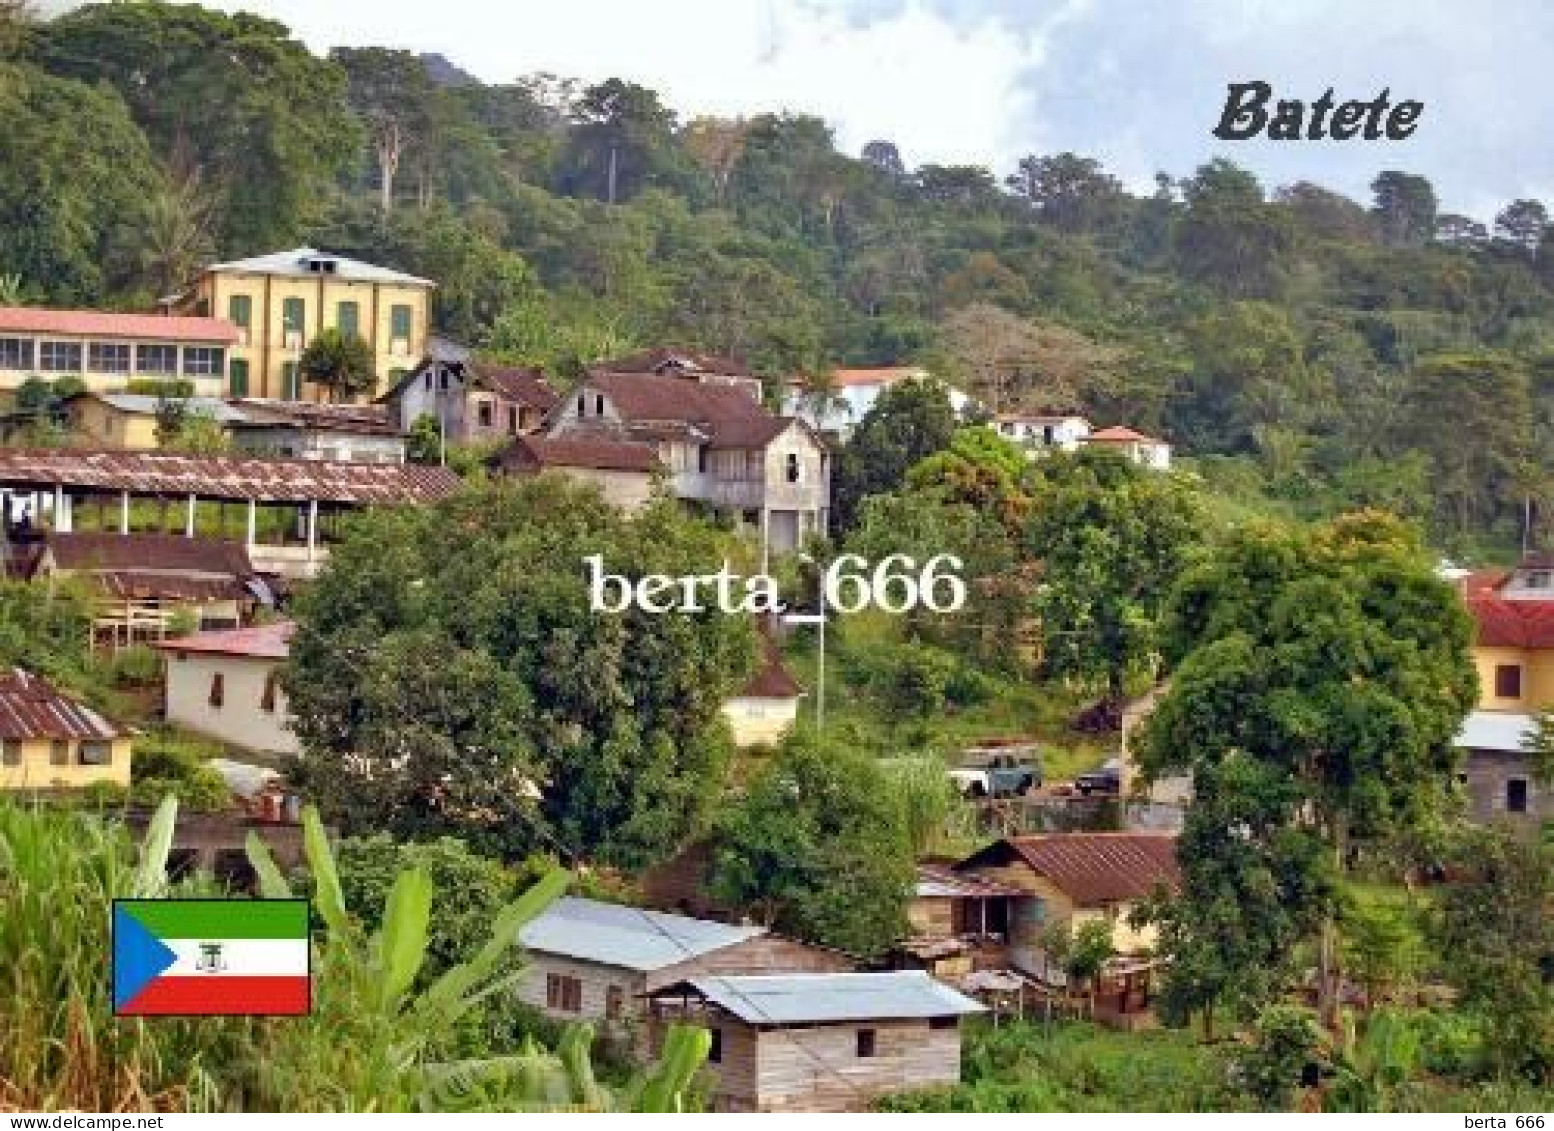 Equatorial Guinea Batete New Postcard - Equatorial Guinea